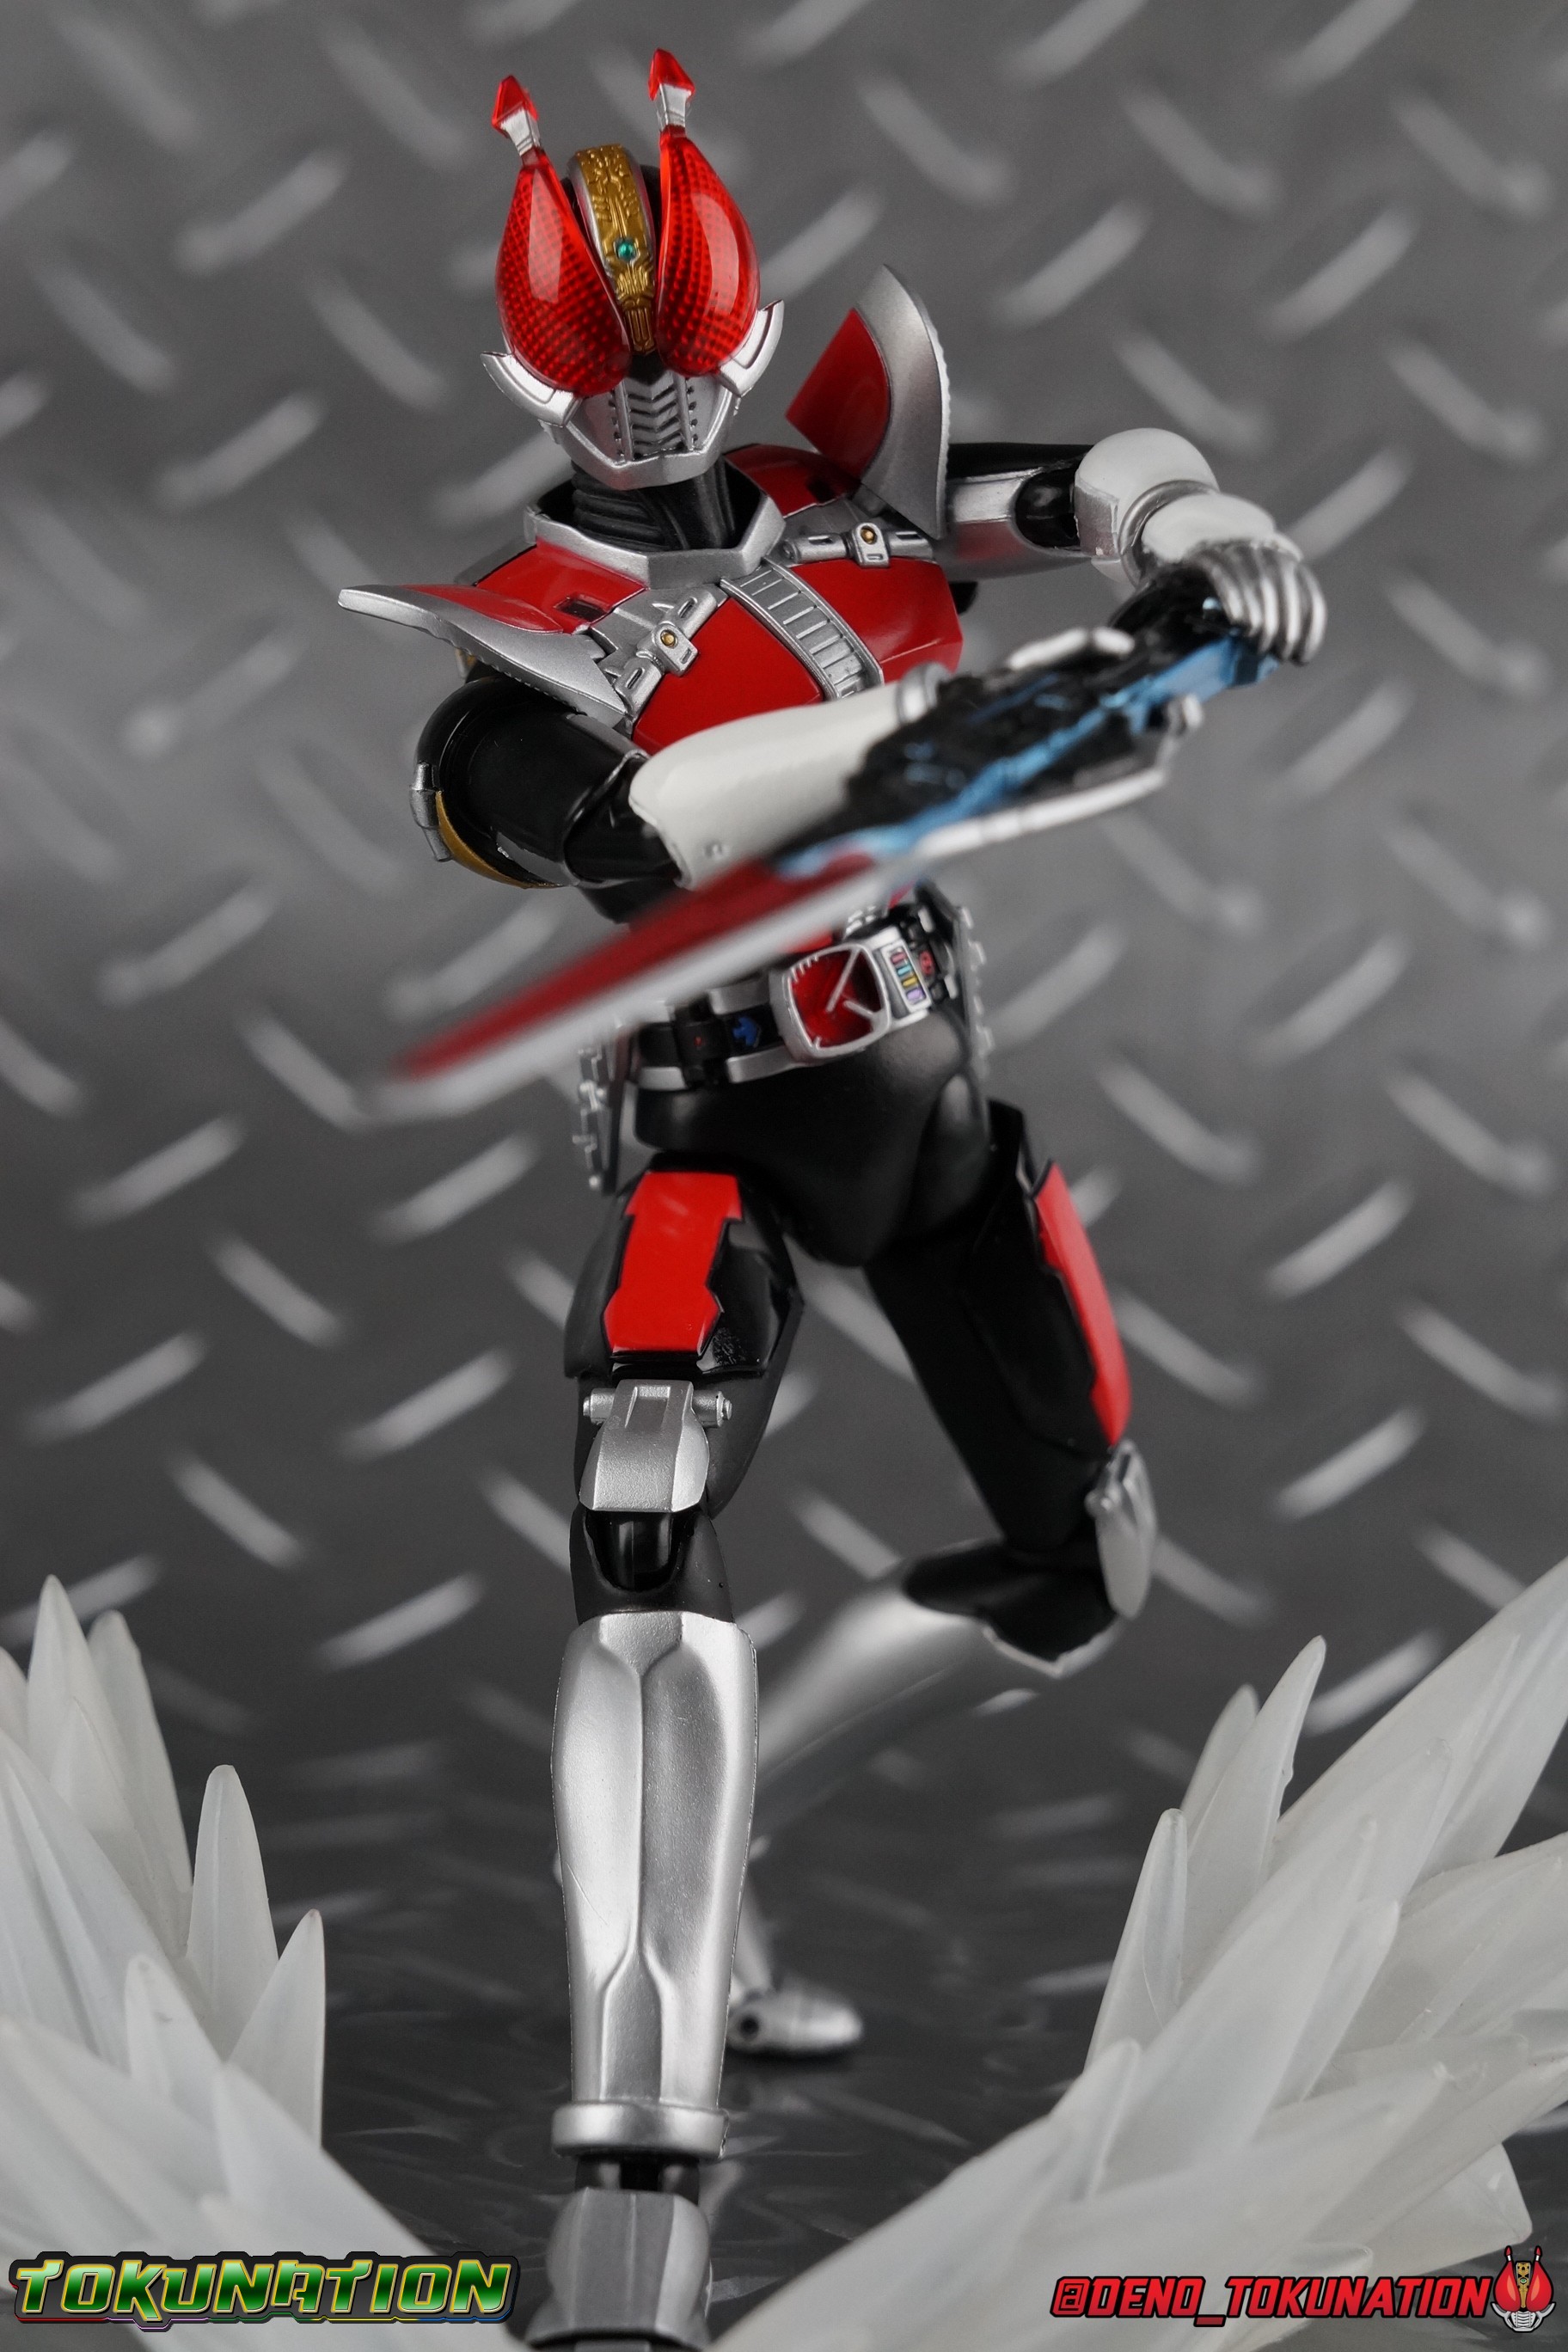 S.H. Figuarts Kamen Rider Den-O Sword Form Gallery ...